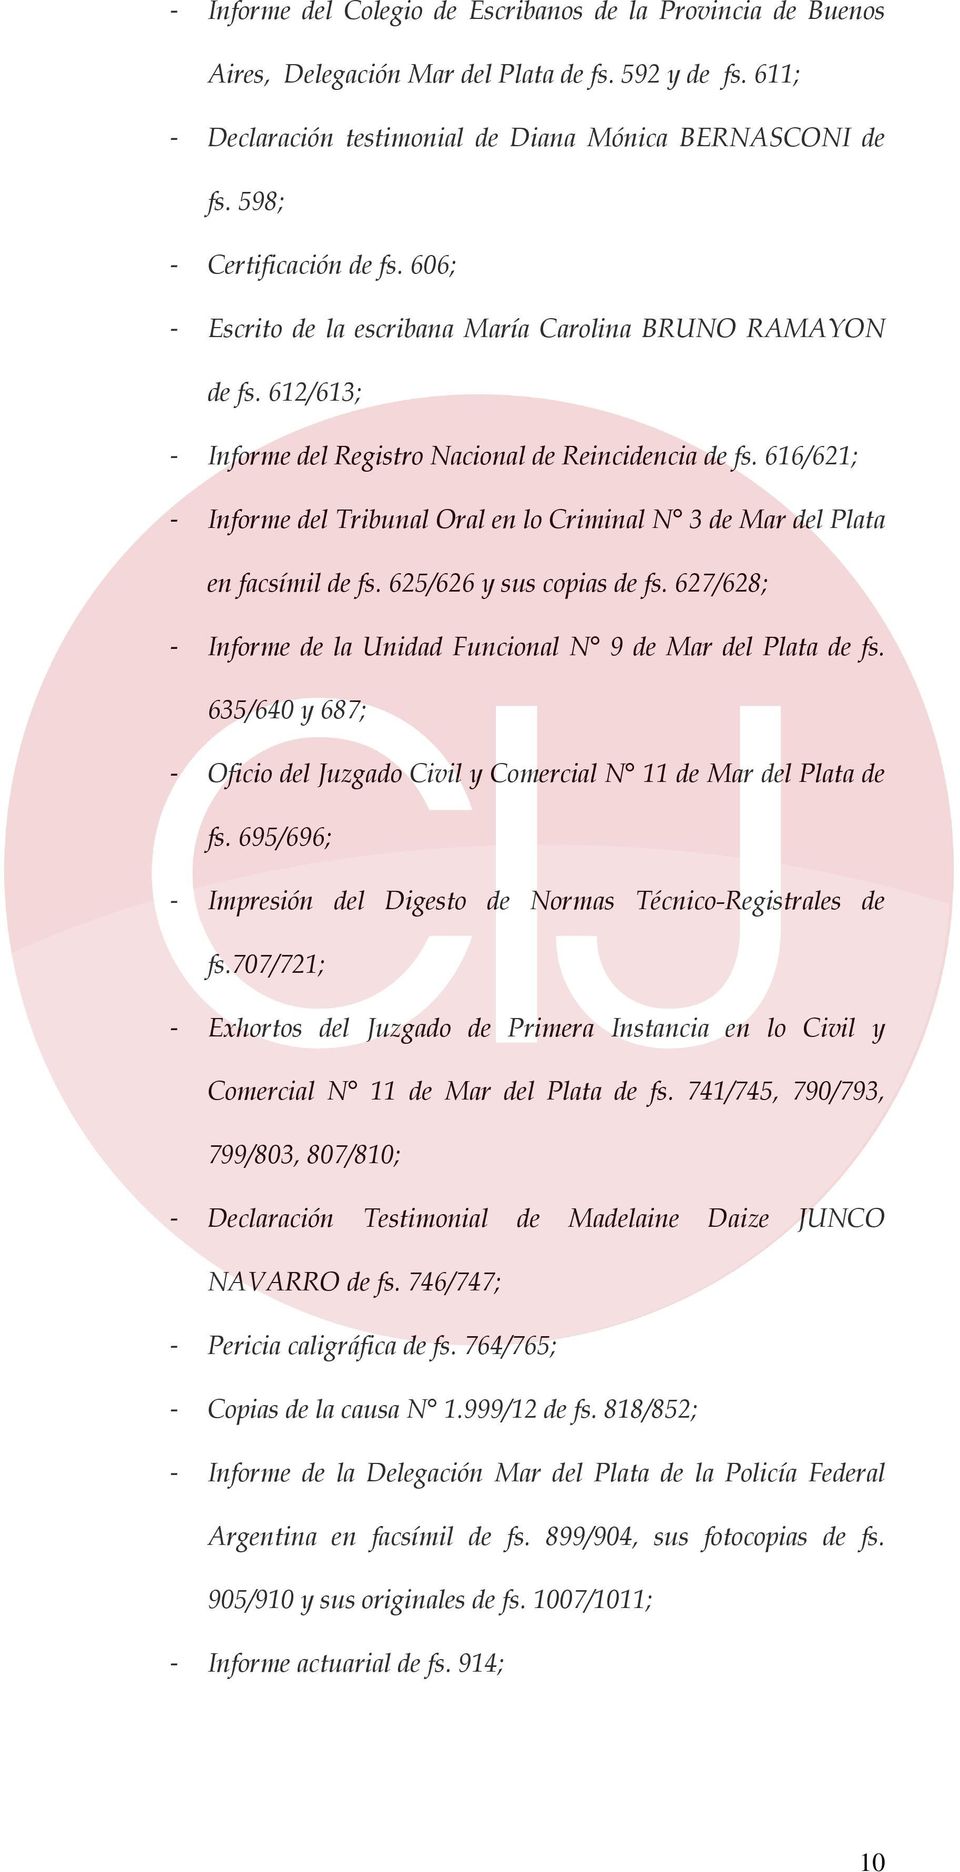 616/621; Informe del Tribunal Oral en lo Criminal N 3 de Mar del Plata en facsímil de fs. 625/626 y sus copias de fs. 627/628; Informe de la Unidad Funcional N 9 de Mar del Plata de fs.